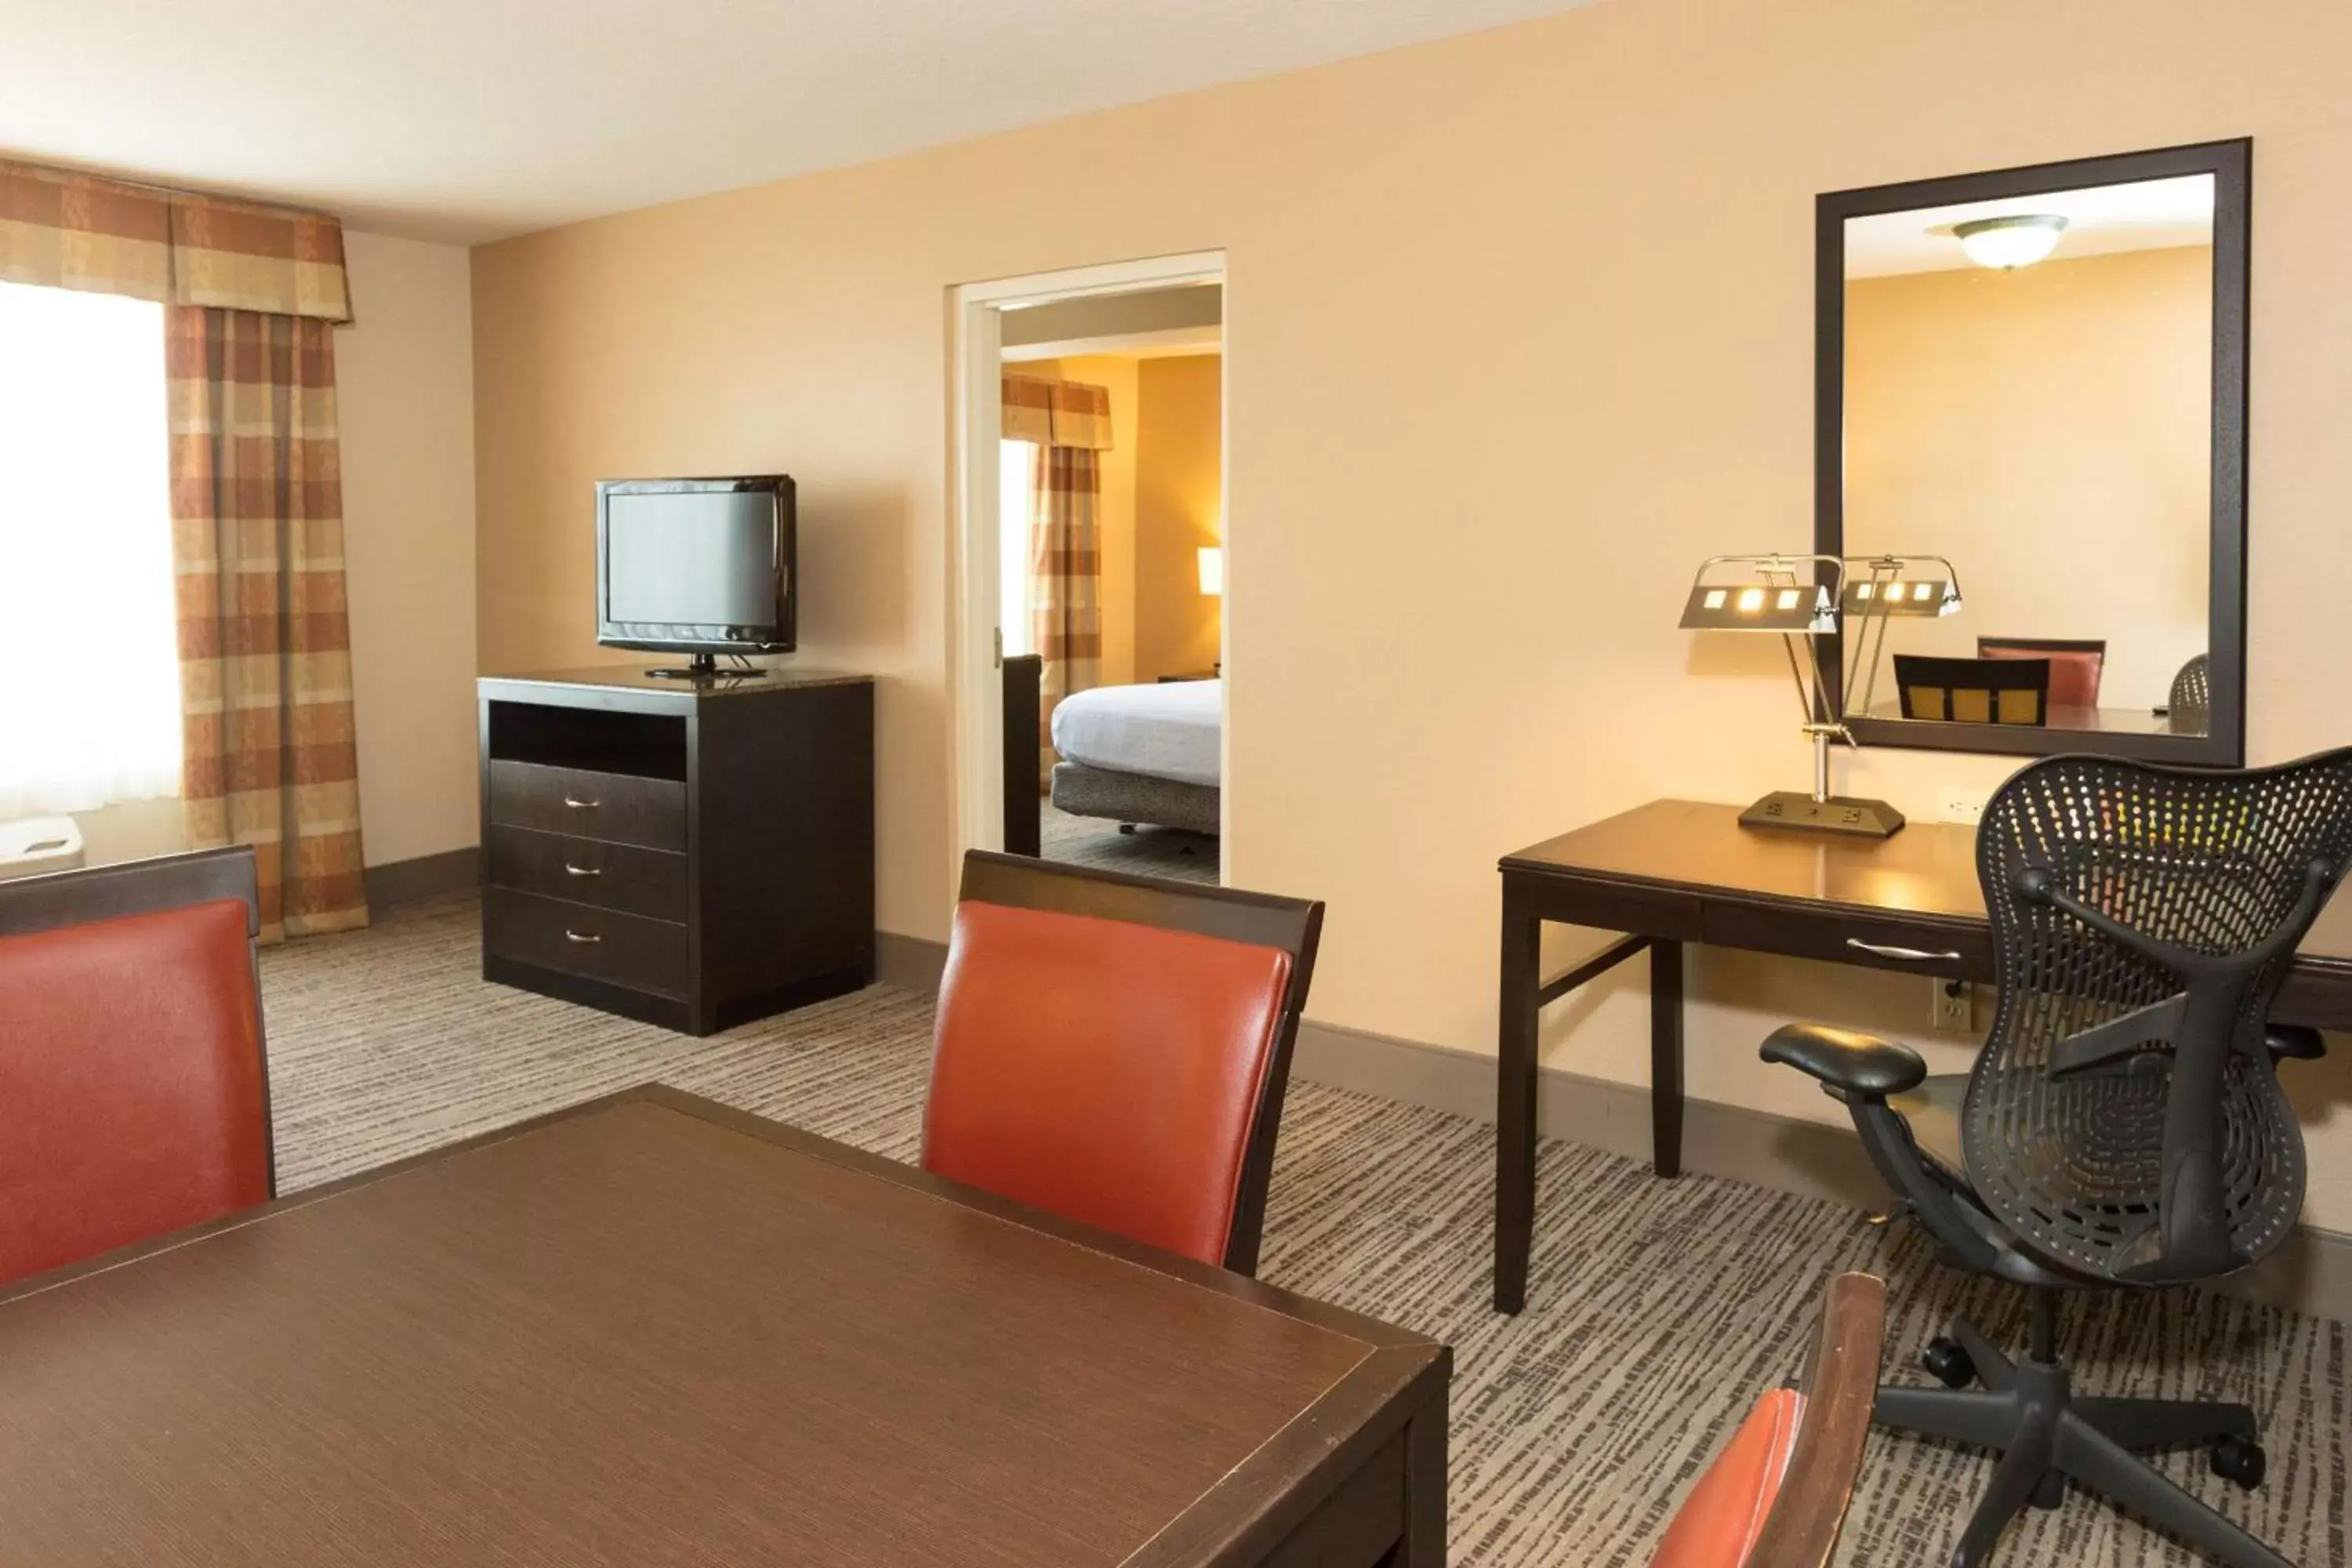 Bedroom, TV/Entertainment Center in Hilton Garden Inn Jacksonville Airport